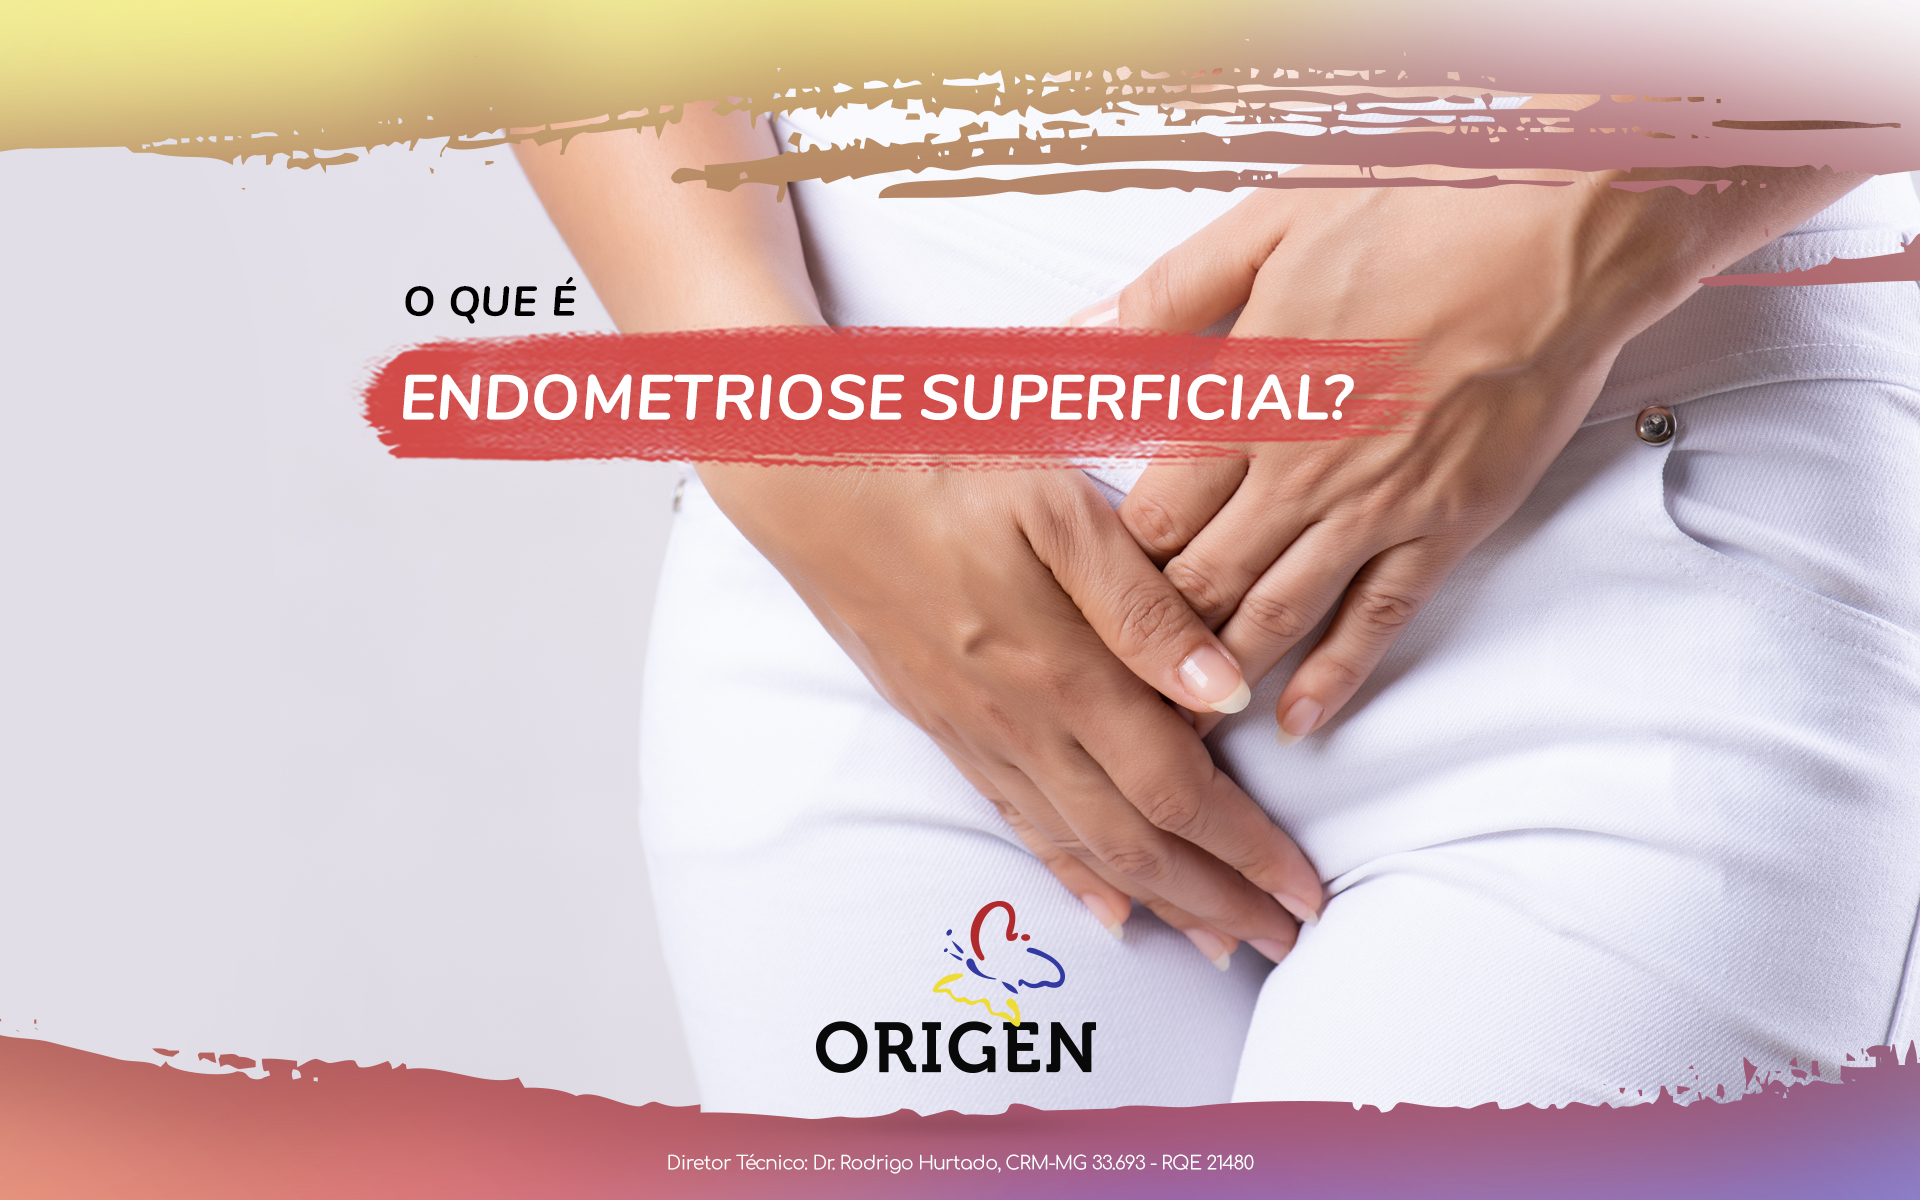 O que é endometriose superficial?